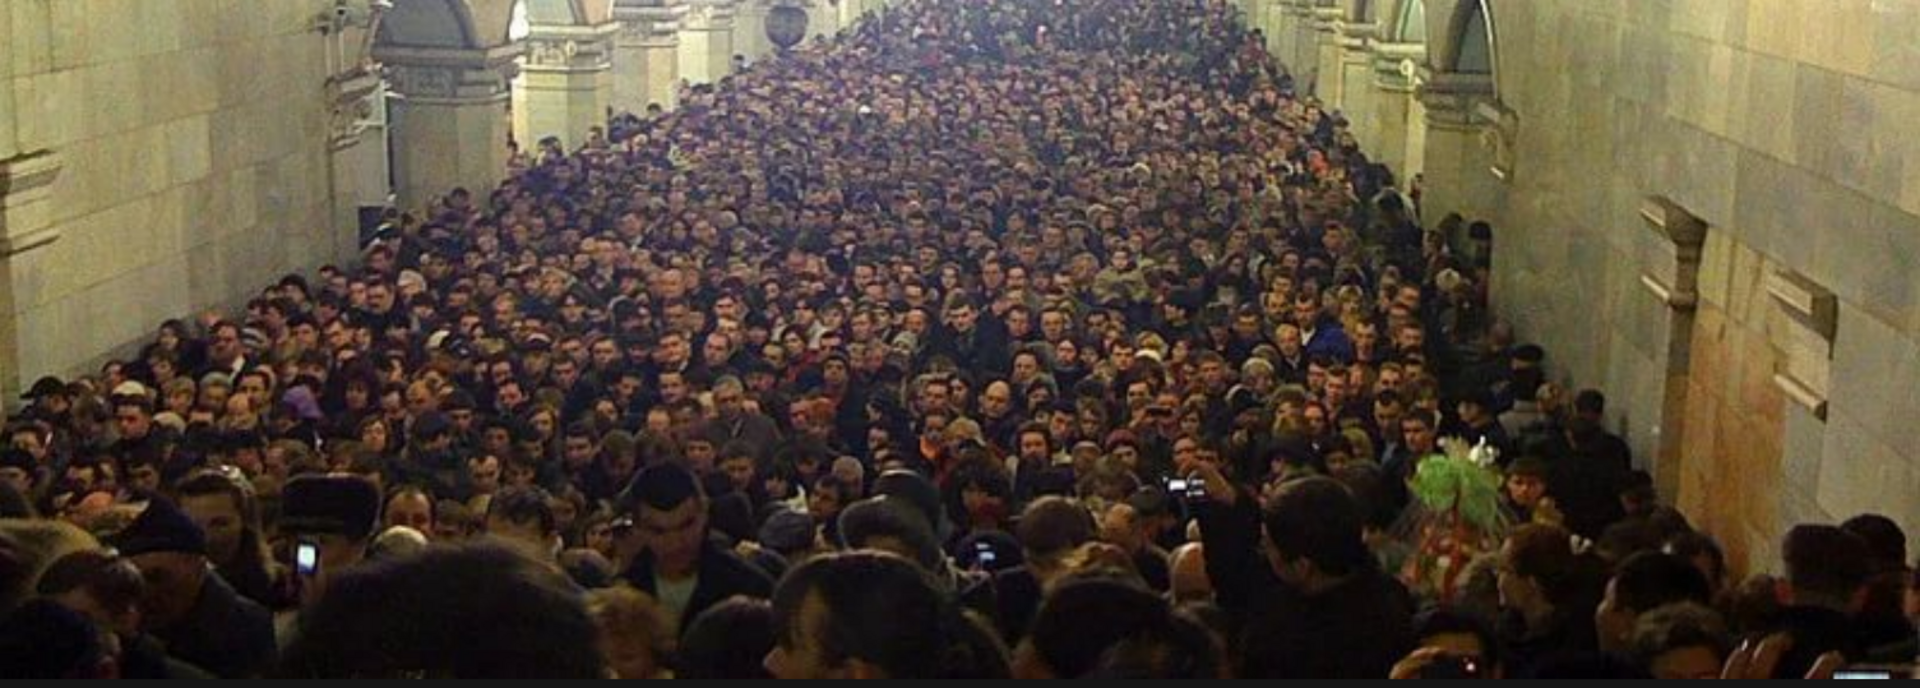 Сколько человек на станции. Давка в метро час пик Москве. Станция метро Комсомольская в час пик. Час пик в метро в Москве. Толпа людей в метро.